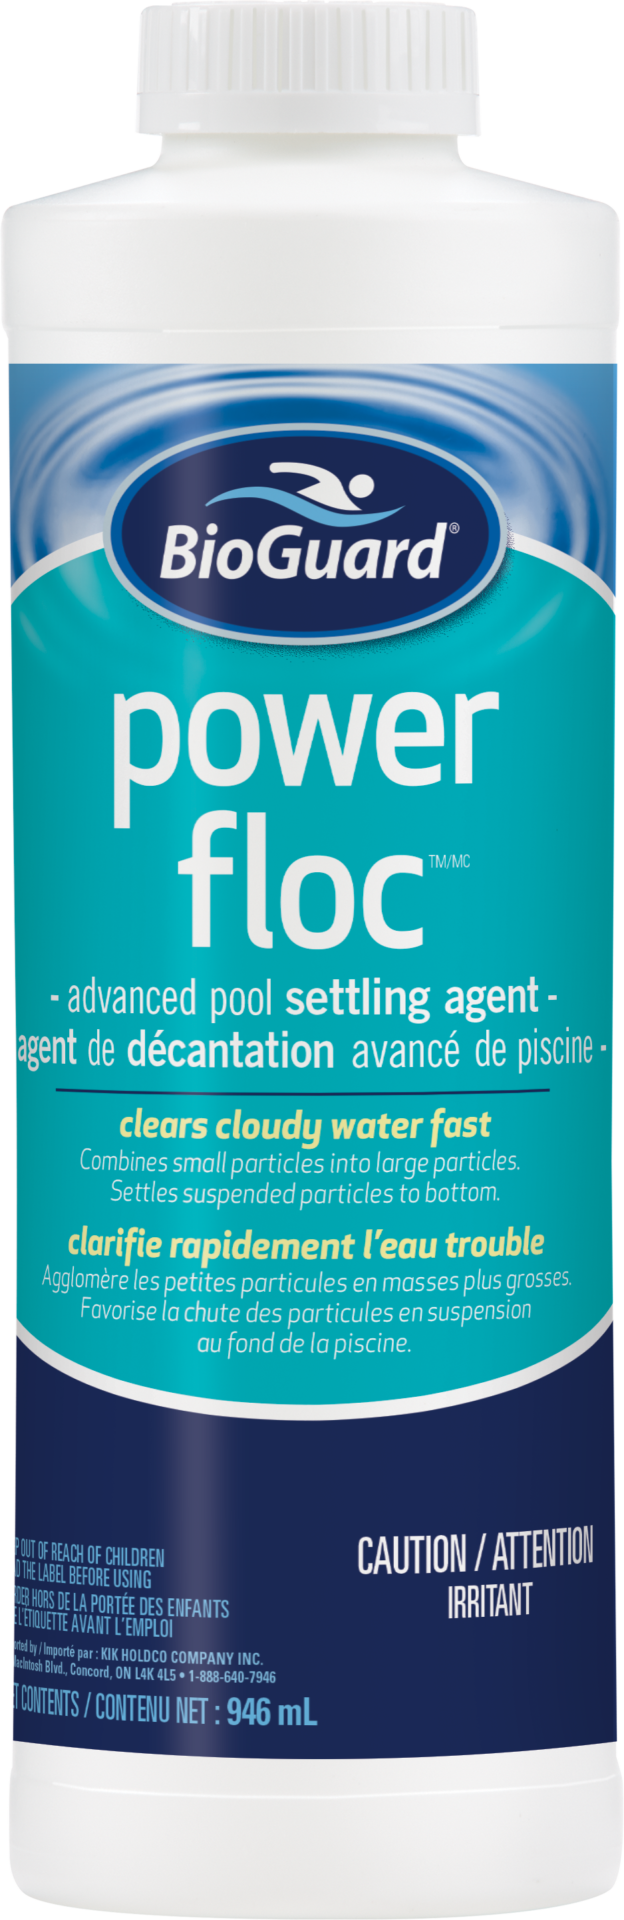 BioGuard Power Floc 946ml - BioGuard Power Floc 946ml